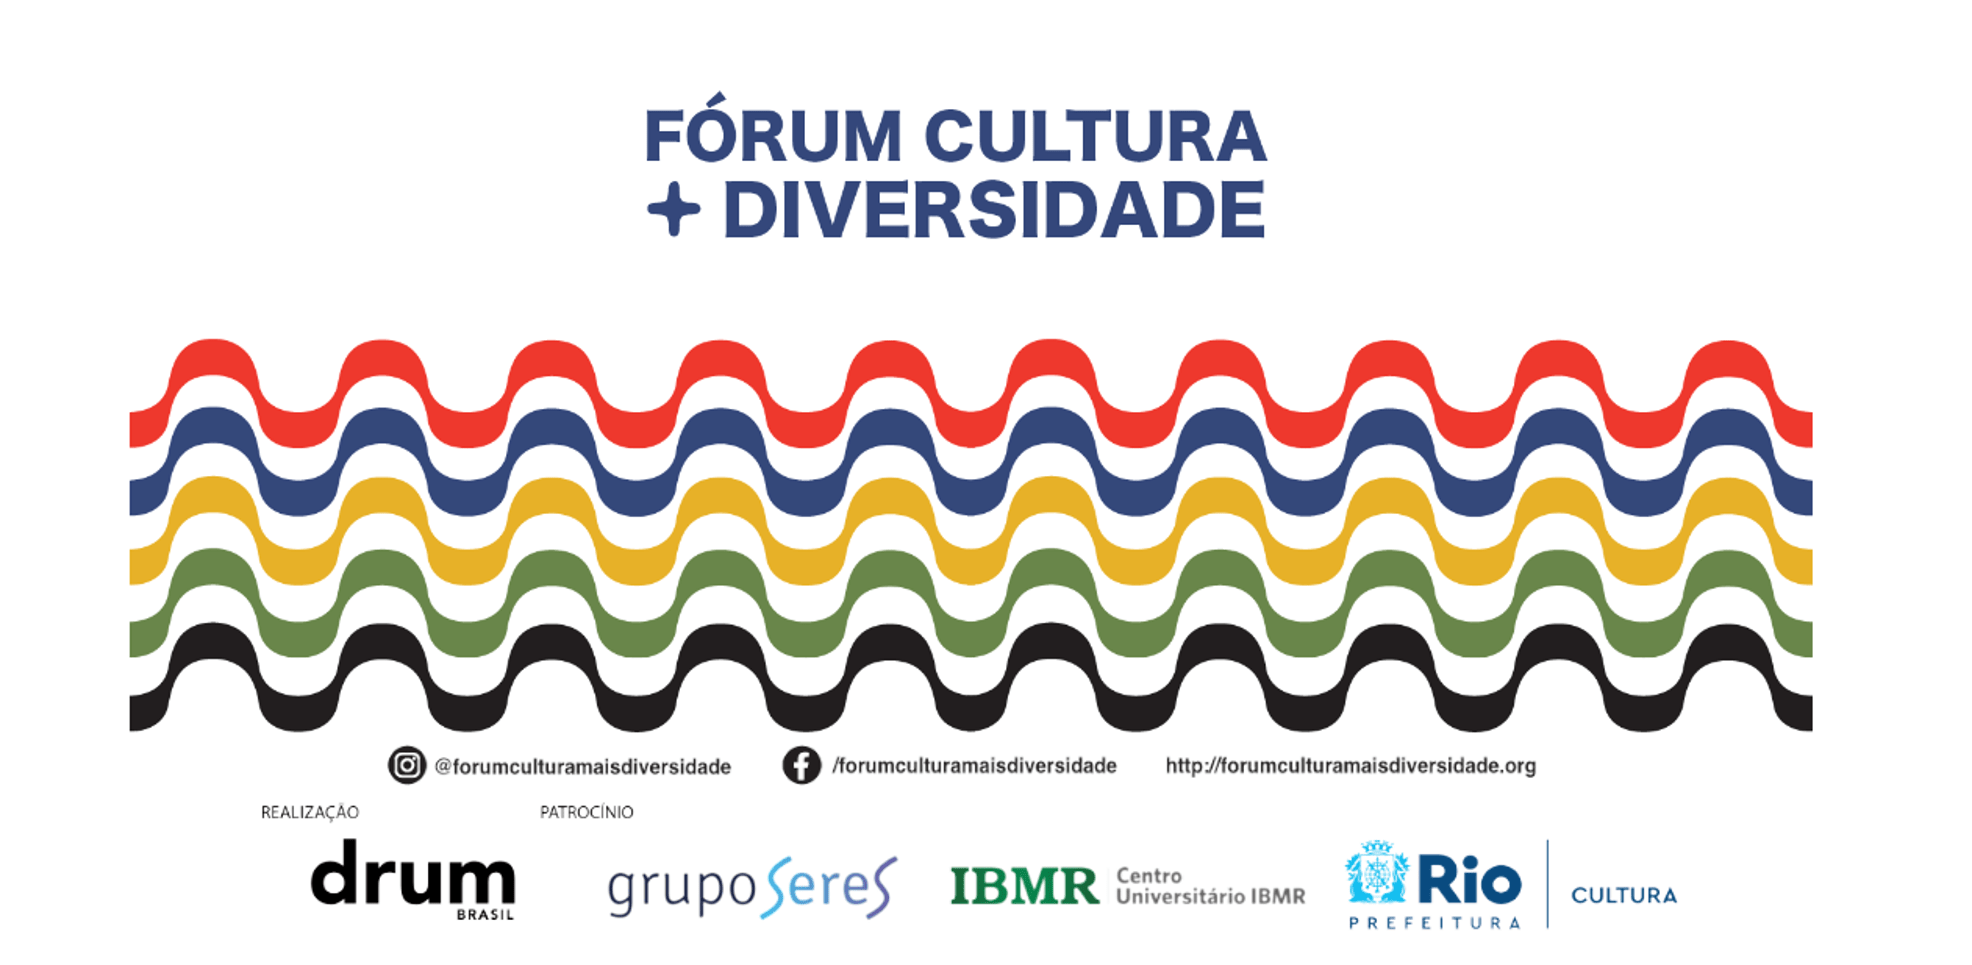 IBMR patrocina Fórum Cultura + Diversidade Rio 2022